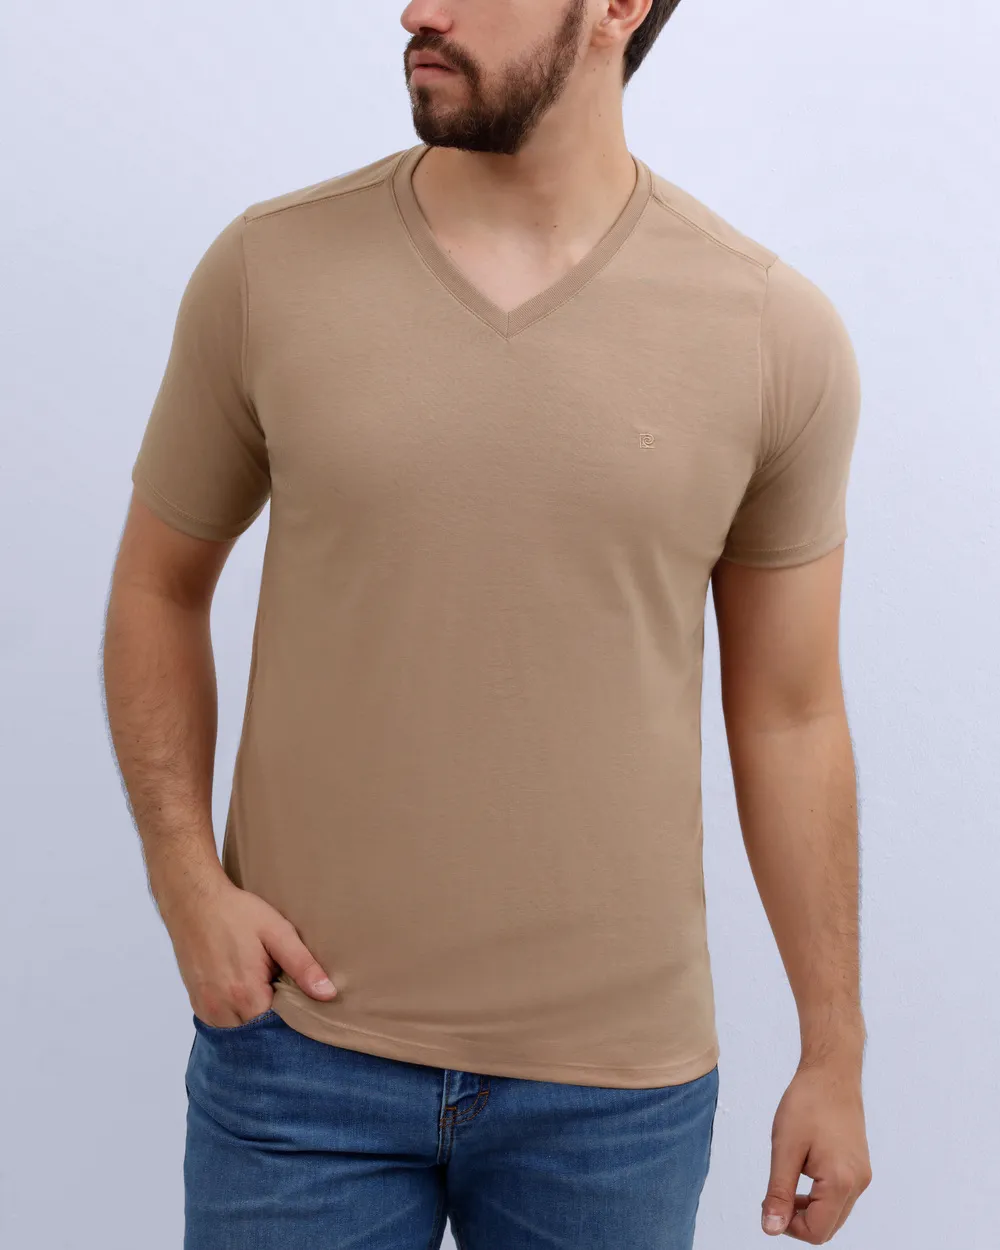 Camiseta cuello v lisa manga corta color cafe